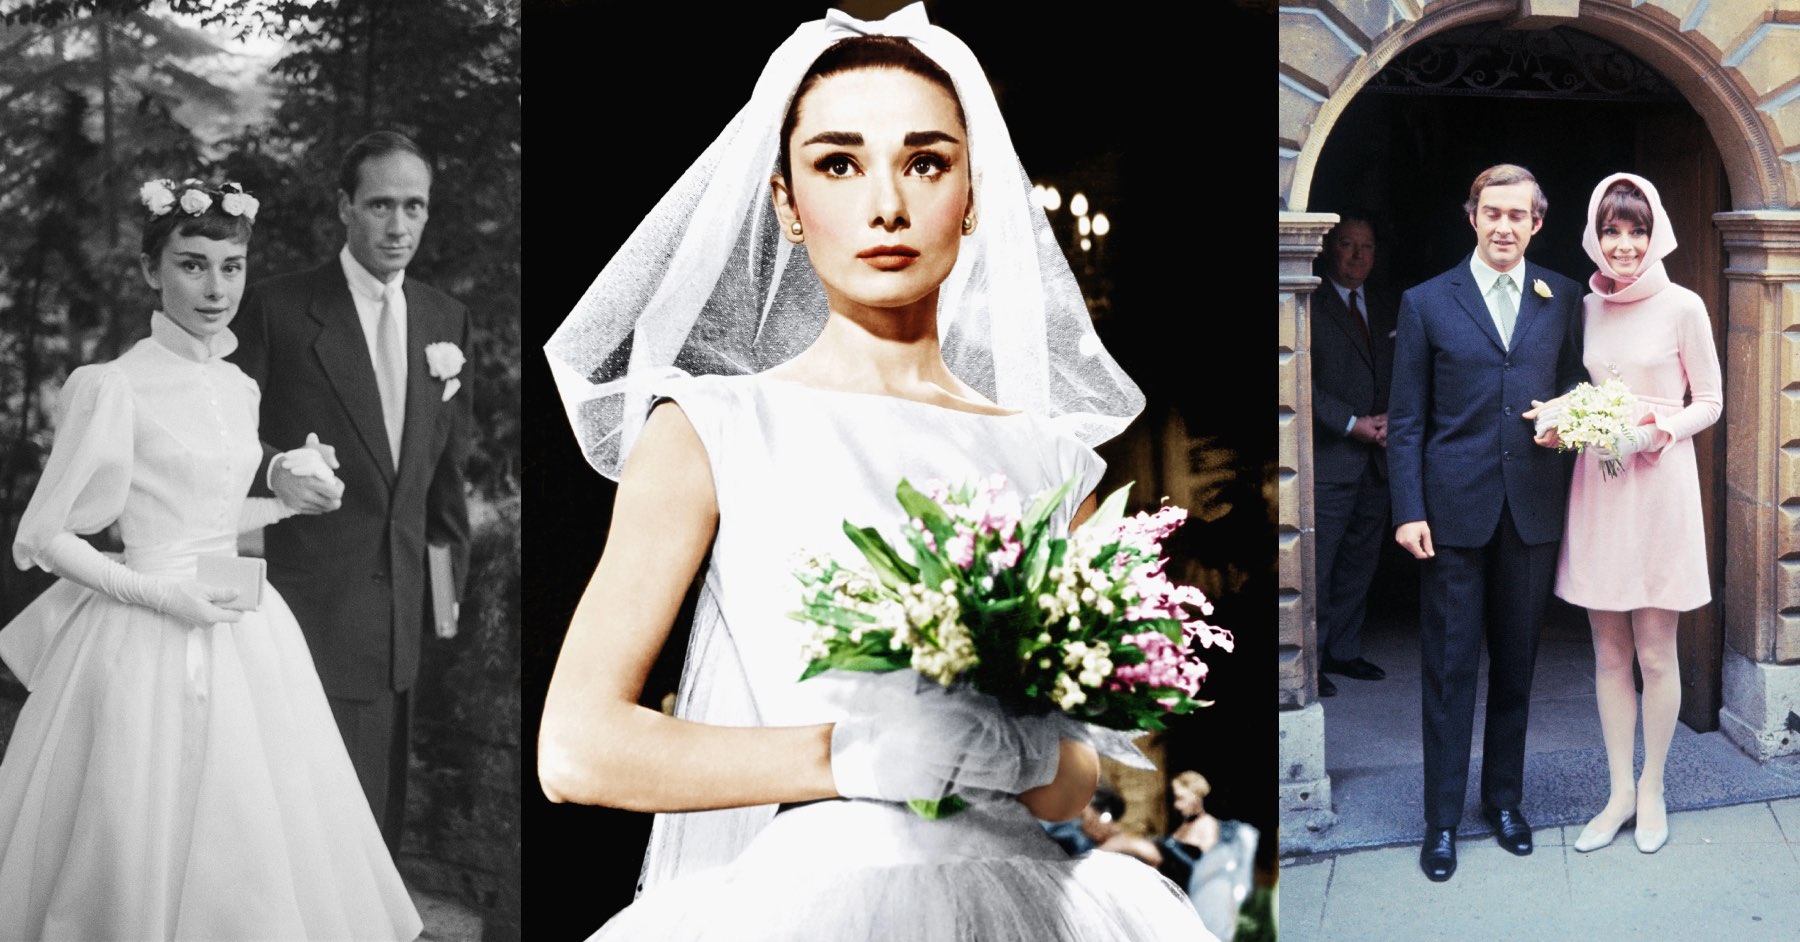 ოდრი ჰეპბერნის საქორწინო კაბების ისტორია და სილუეტები, რომლებიც დღემდე შთაგვაგონებს